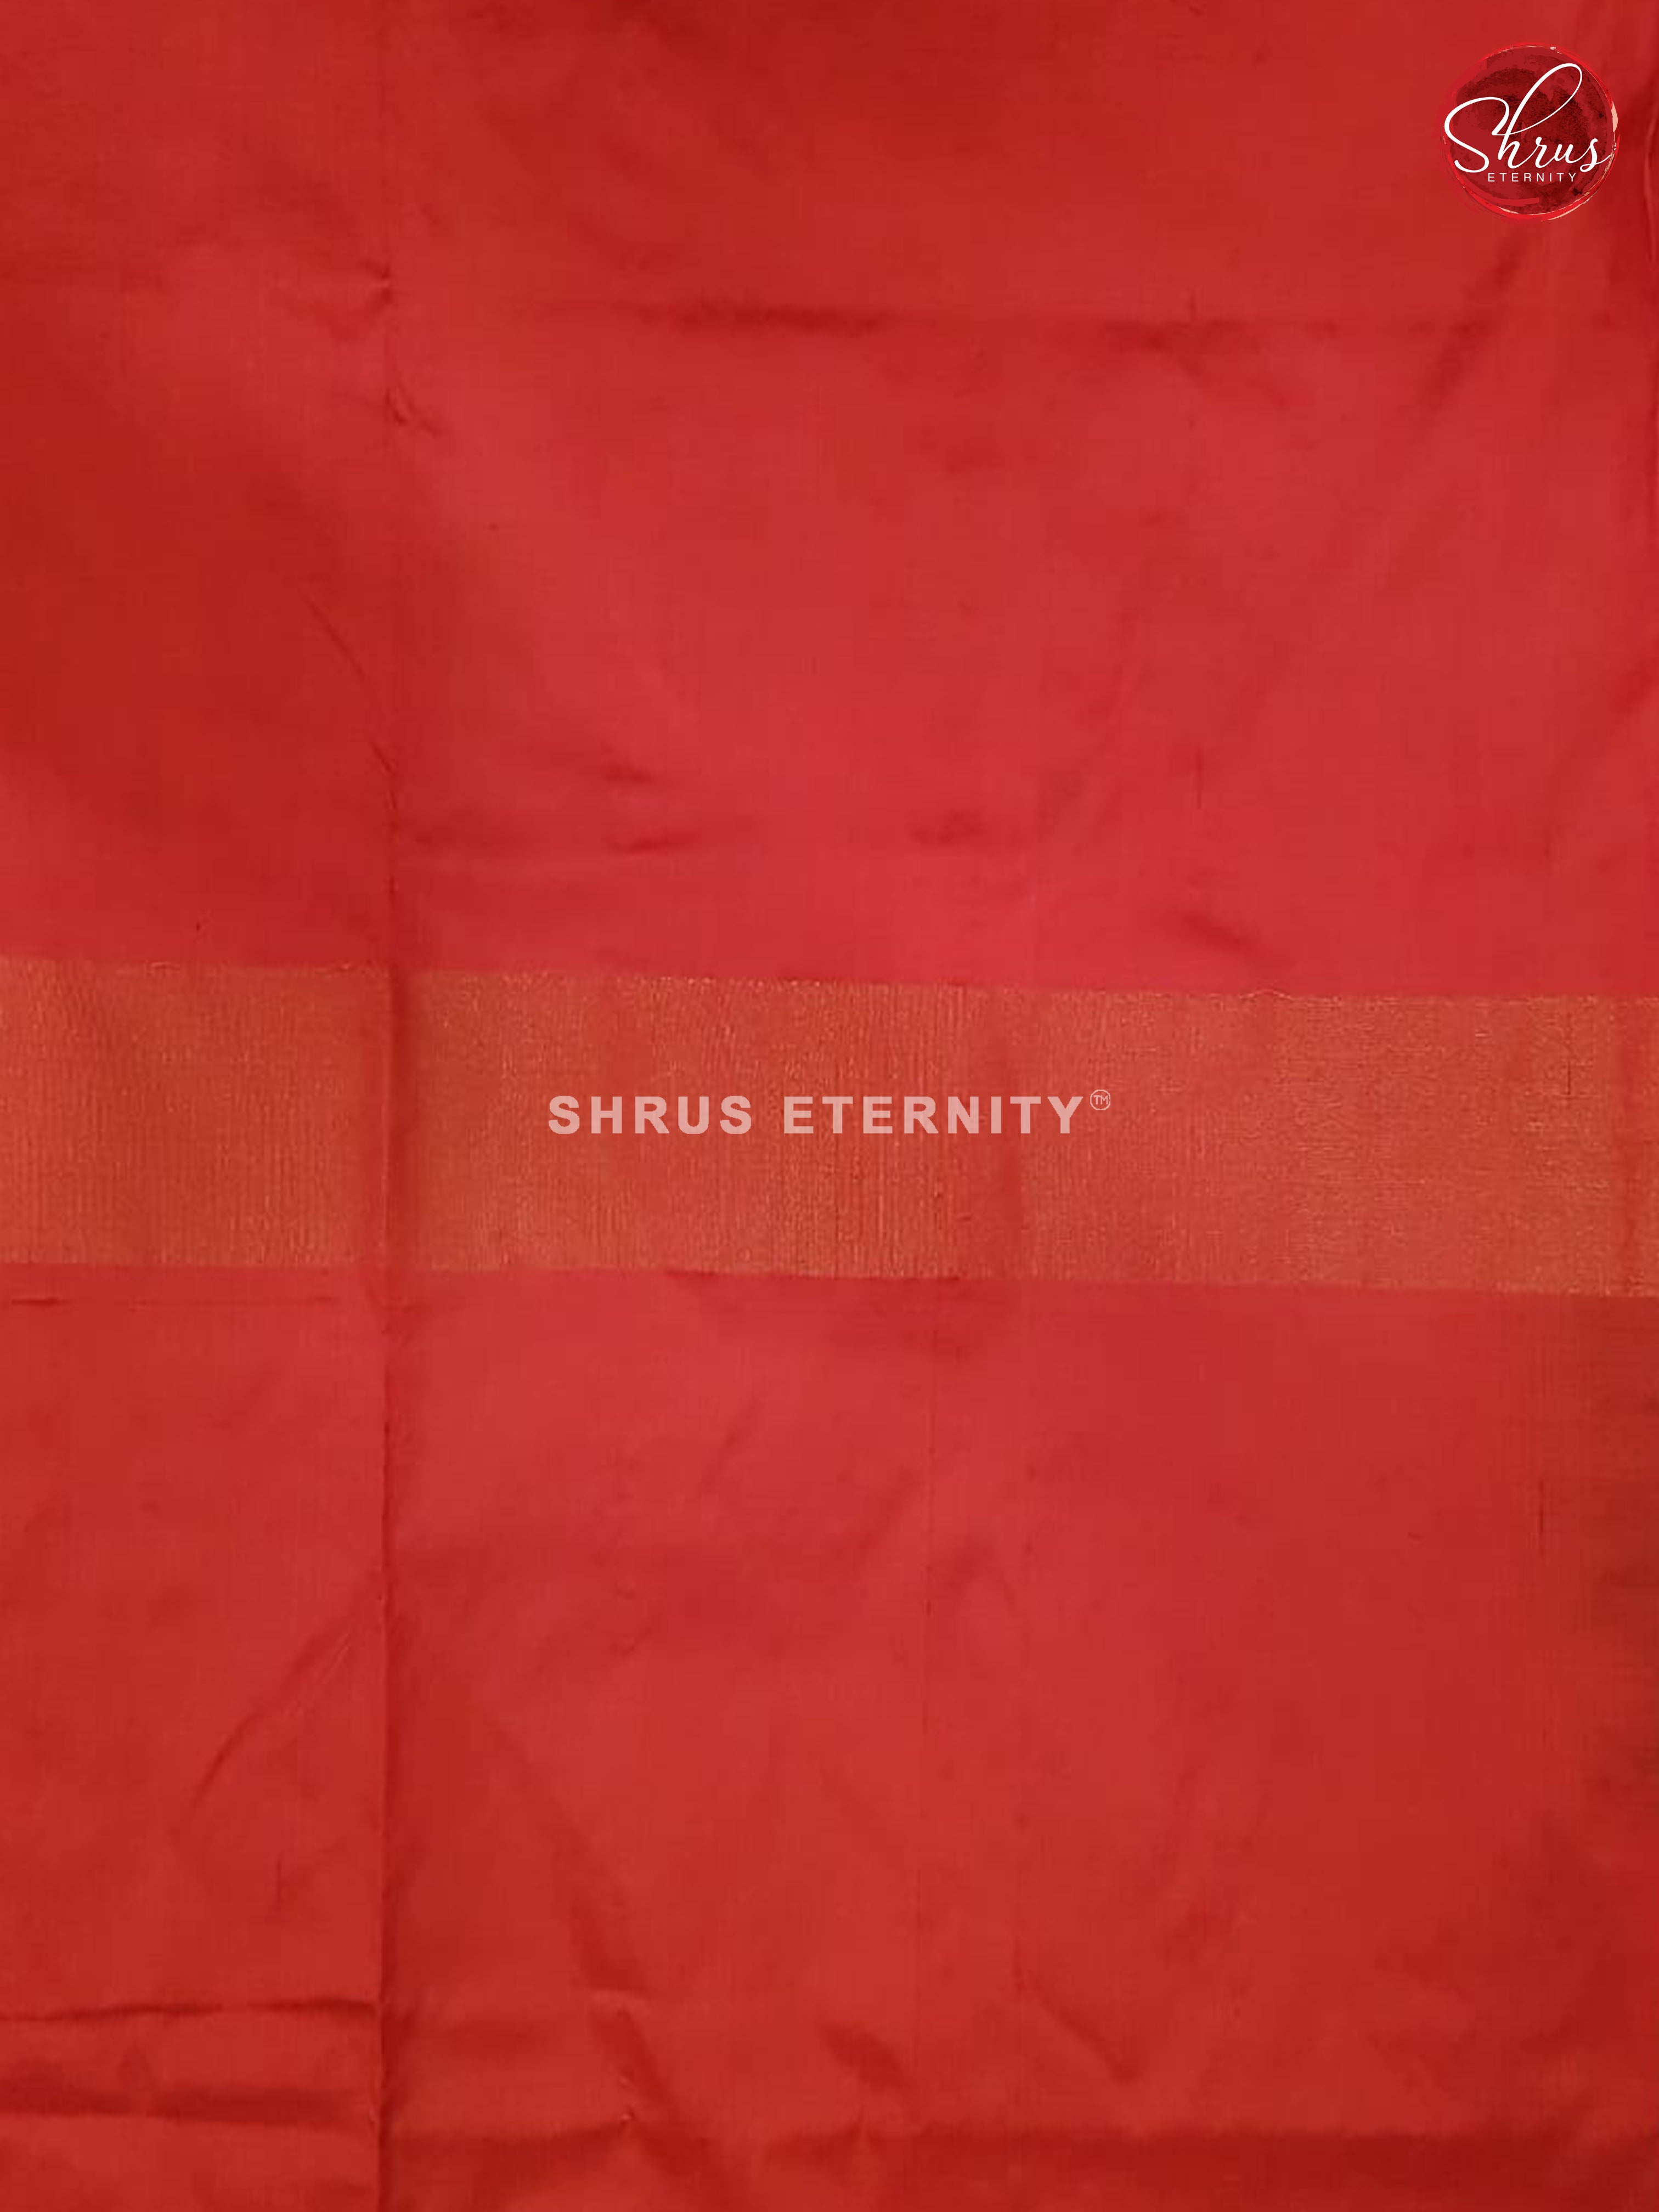 Green & Red - Ikkat Silk - Shop on ShrusEternity.com